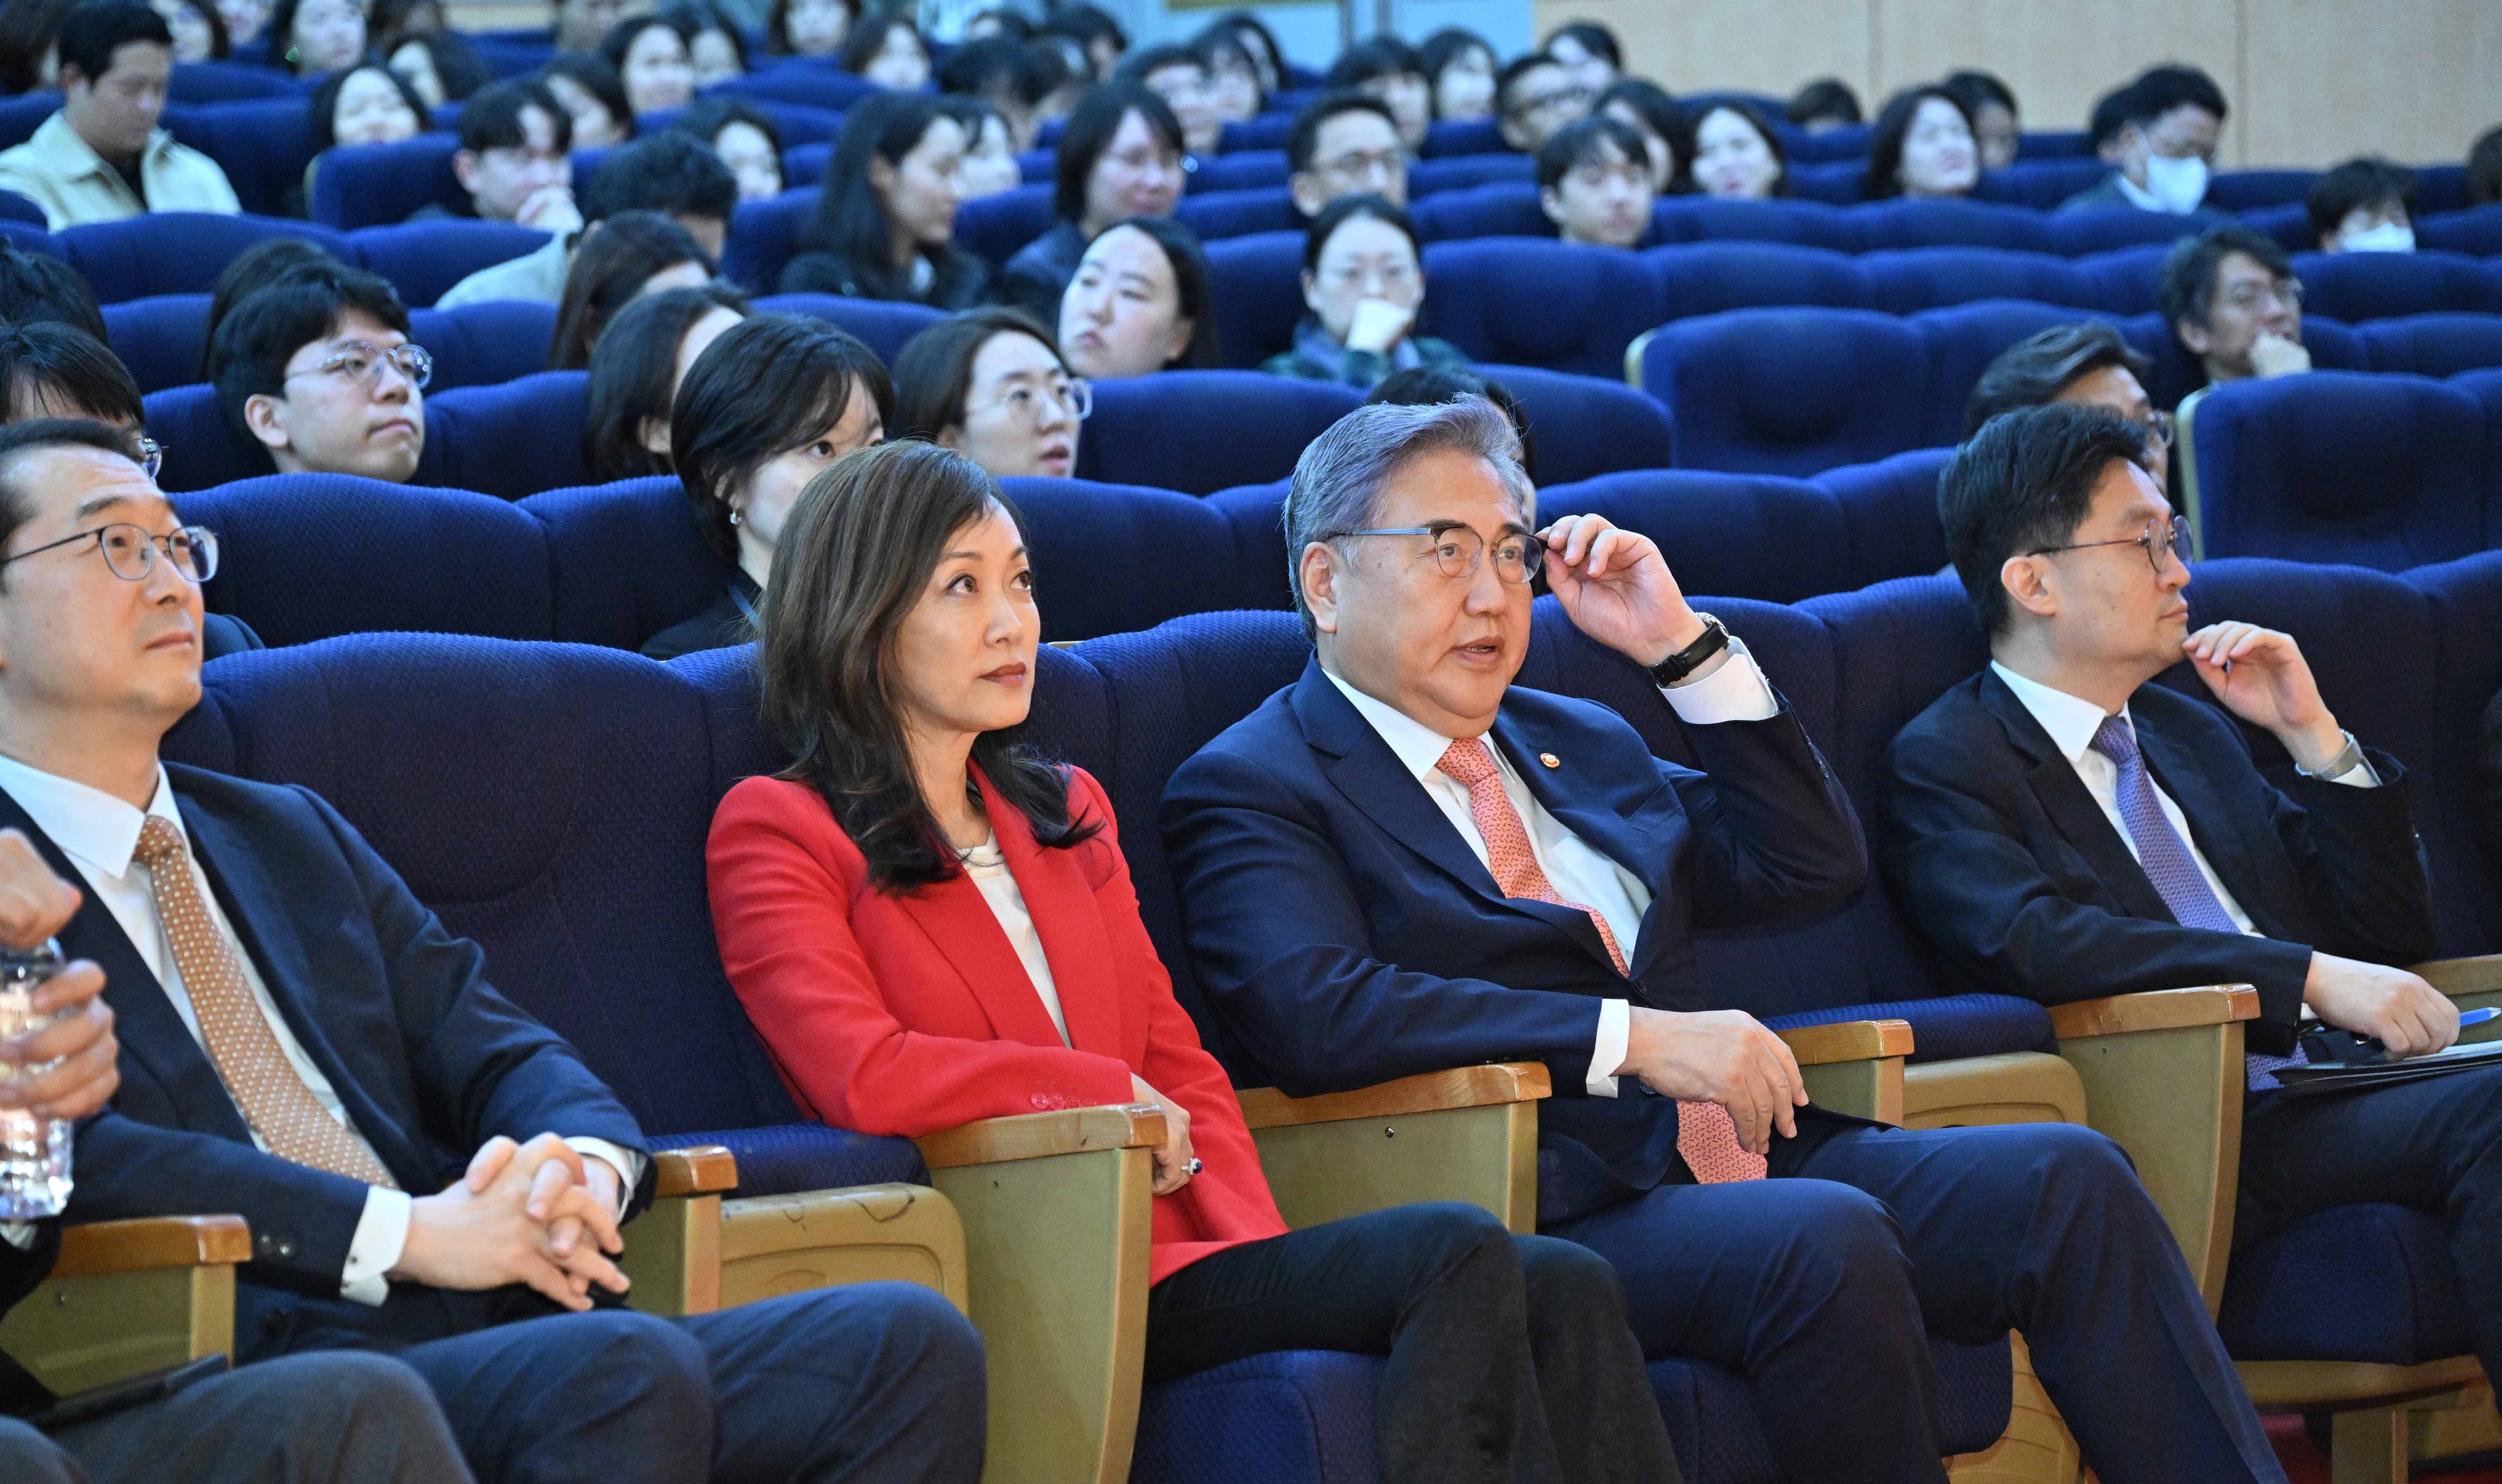 박진 외교부 장관이 6일 외교부 청사에서 열린 ‘비욘드 유토피아’ 상영회에서 제작자인 수미 테리와 함께 앉아 다큐멘터리를 보고 있다. 외교부 제공